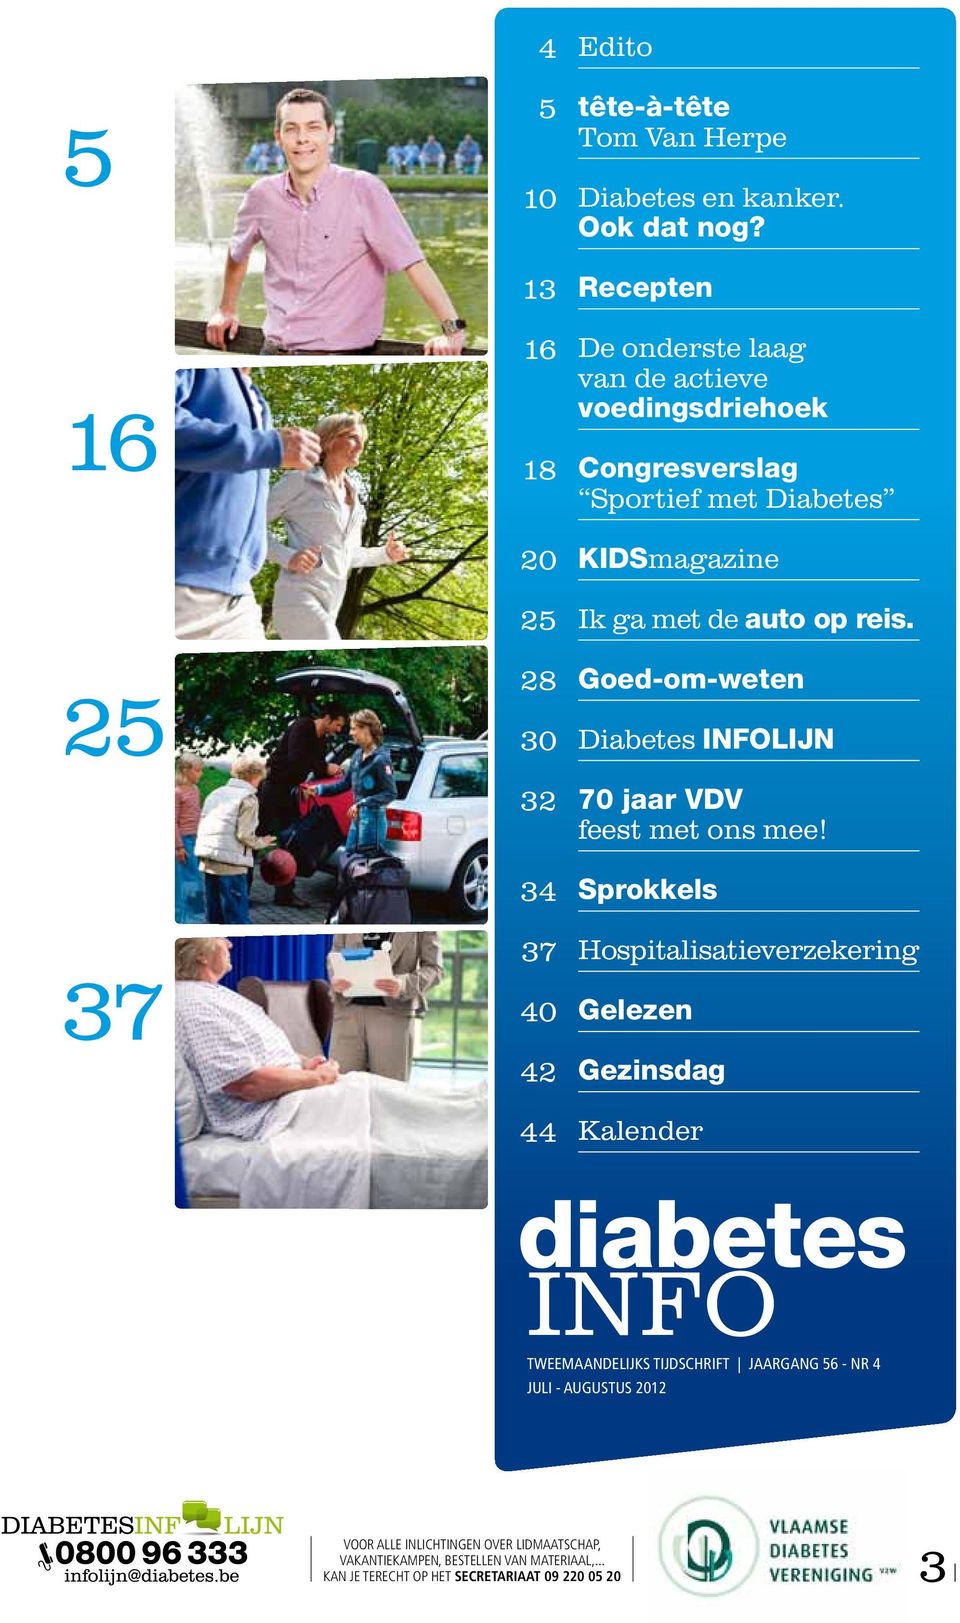 Goed-om-weten Diabetes INFOLIJN 70 jaar VDV feest met ons mee!